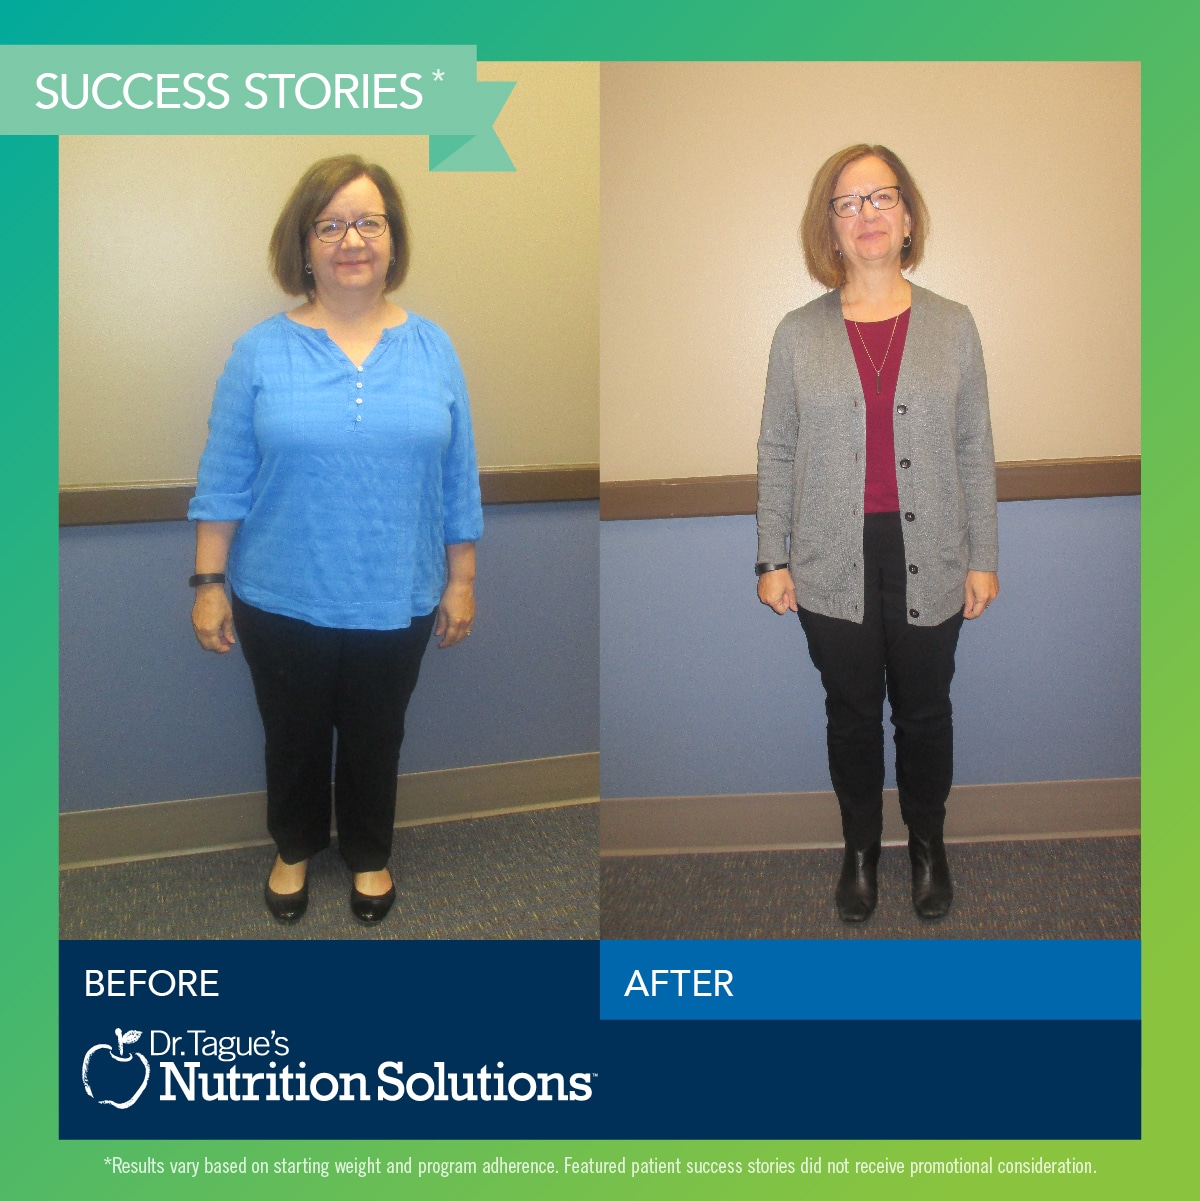 Dr. Tague Success Story - Sara lost 50 lbs!